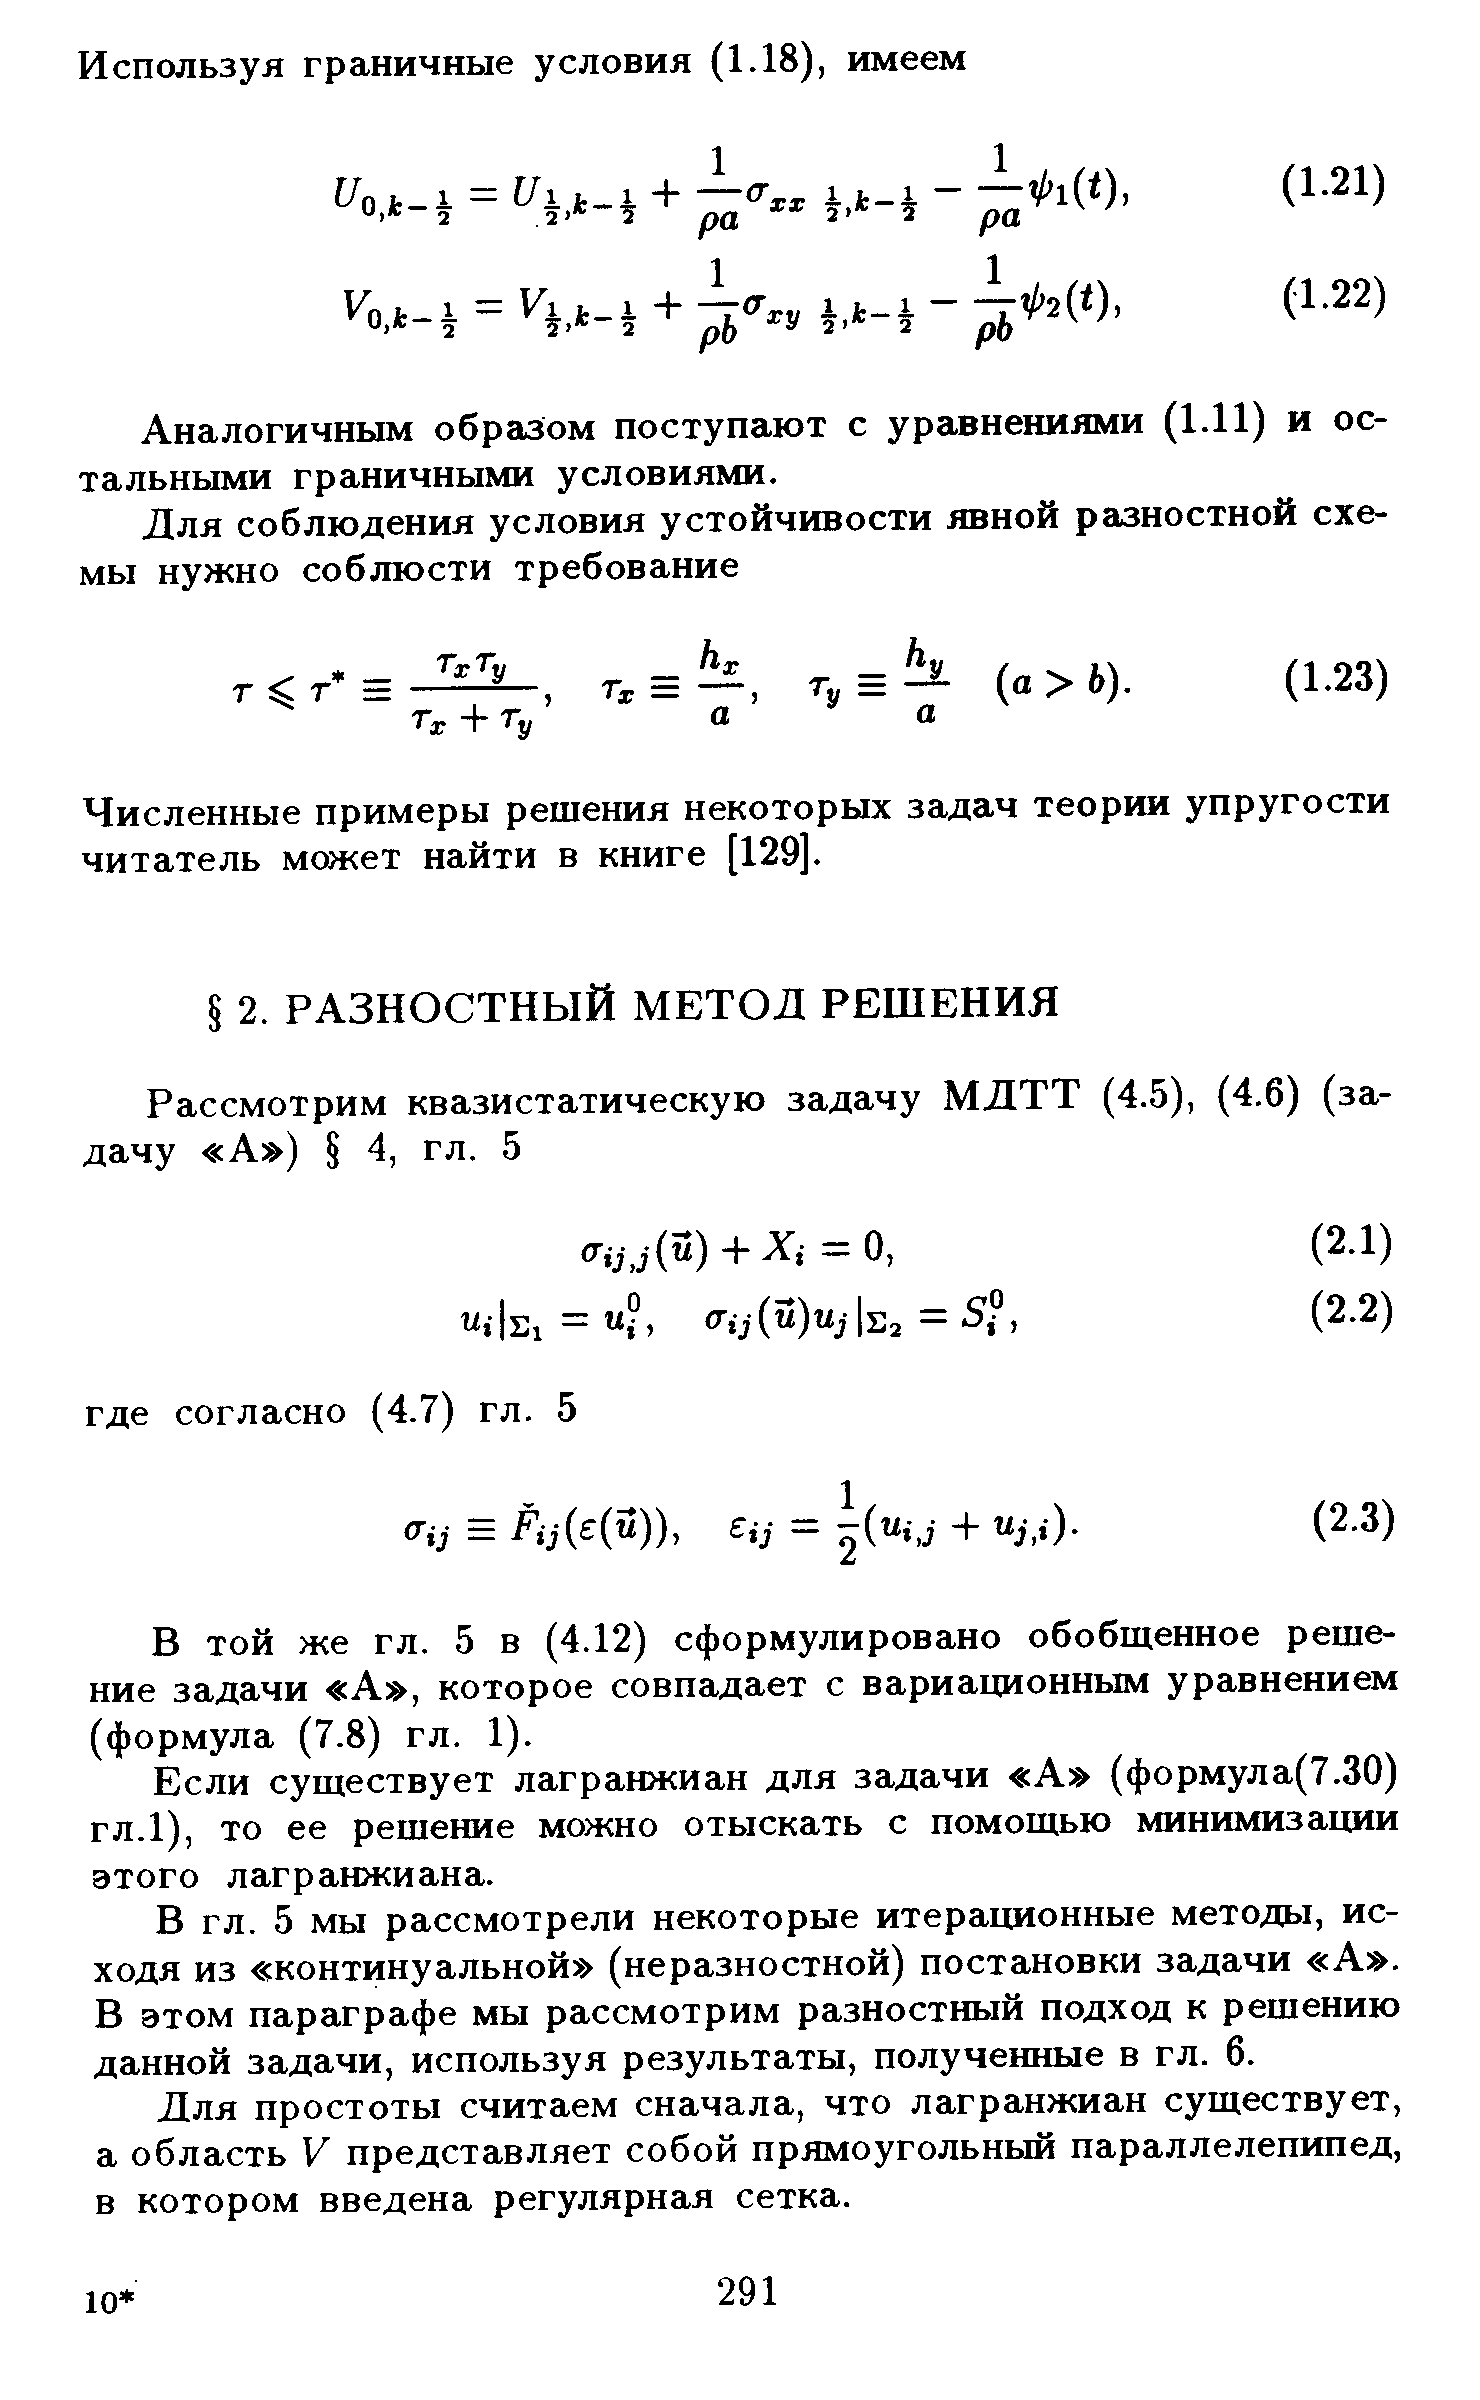 В той же гл. 5 в (4.12) сформулировано обобщенное решение задачи А , которое совпадает с вариационным уравнением (формула (7.8) гл. 1).
